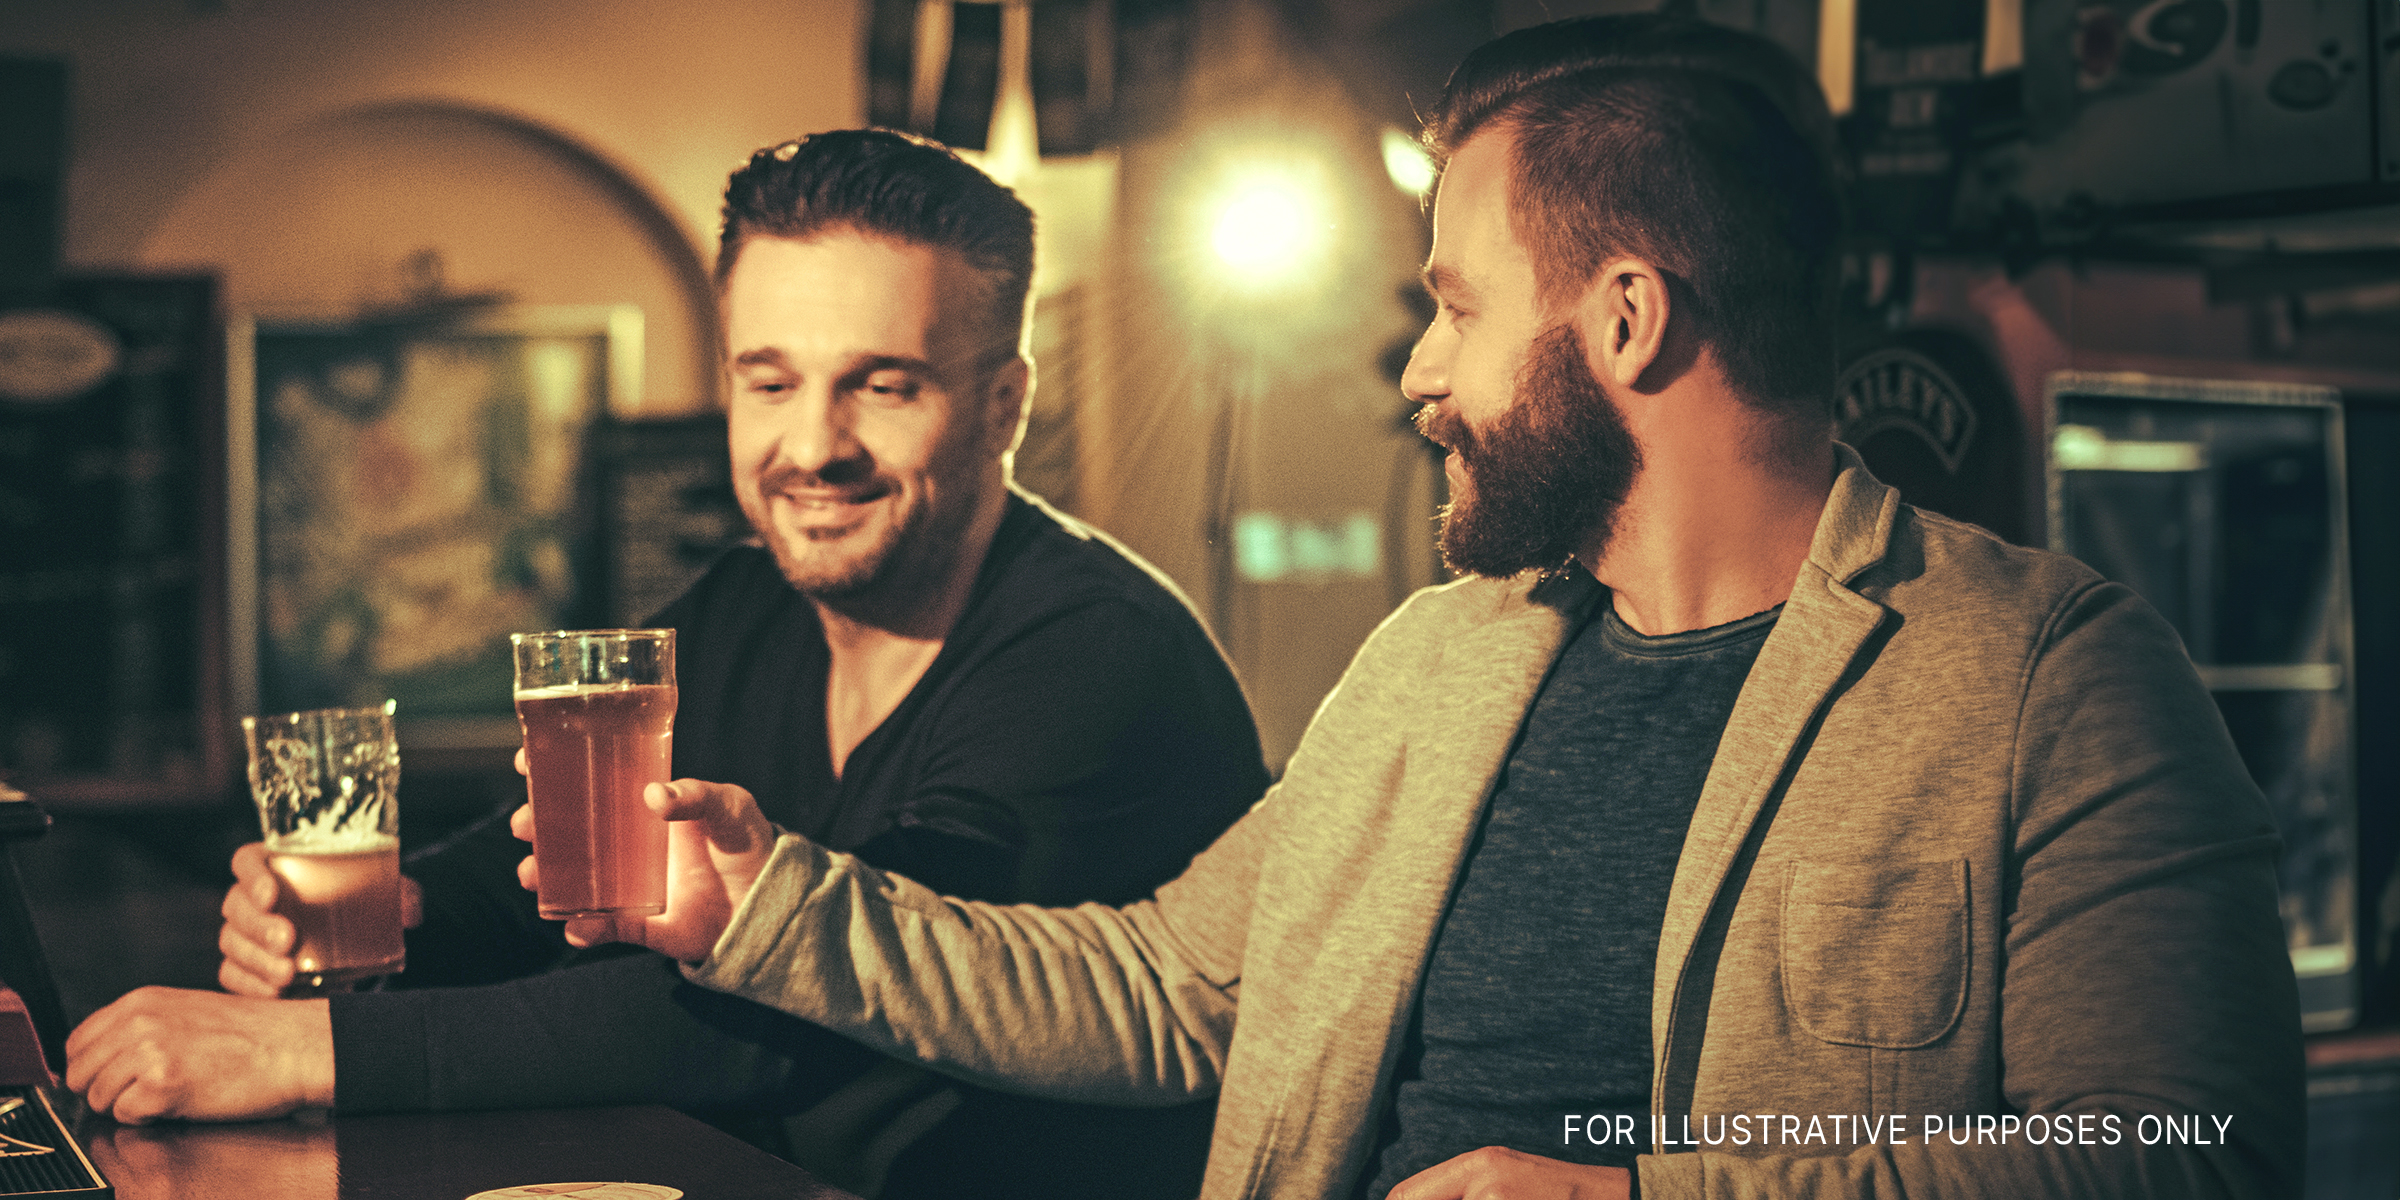 Two men having drinks in a pub | Source: Shutterstock